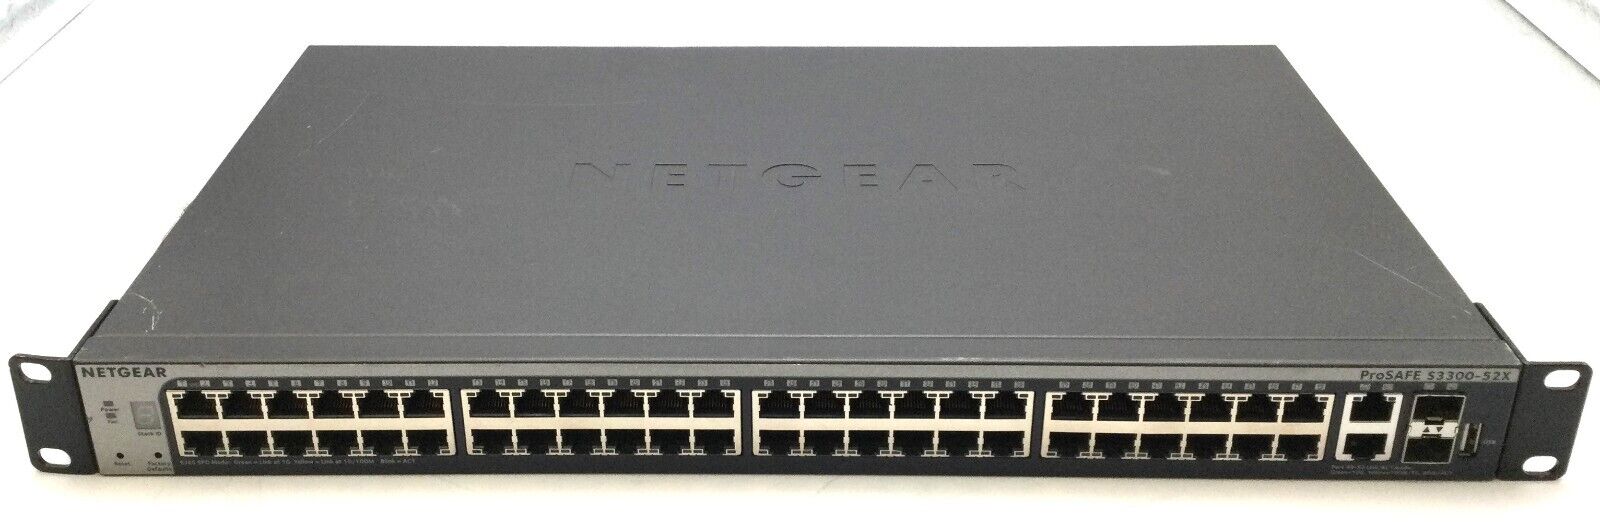 Netgear ProSAFE S3300-52X GS752TX 52-port Gigabit Stackable Smart Switch